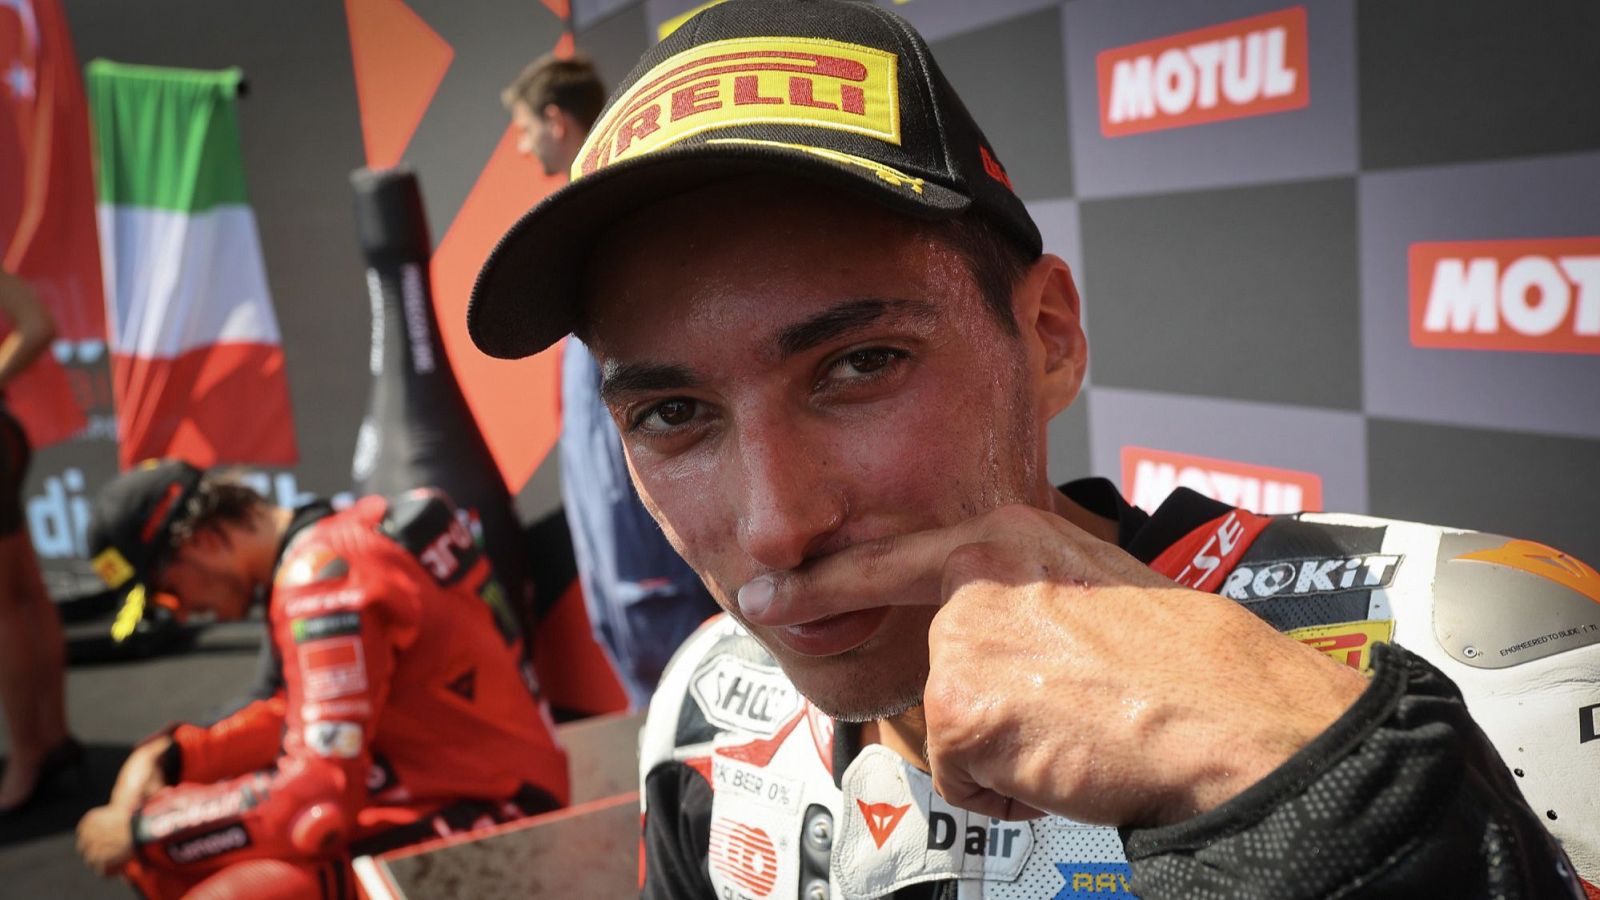 Mundial de Superbike - Razgatlioglu logra su dcima victoria consecutiva, en un da aciago para Bautista y Ducati